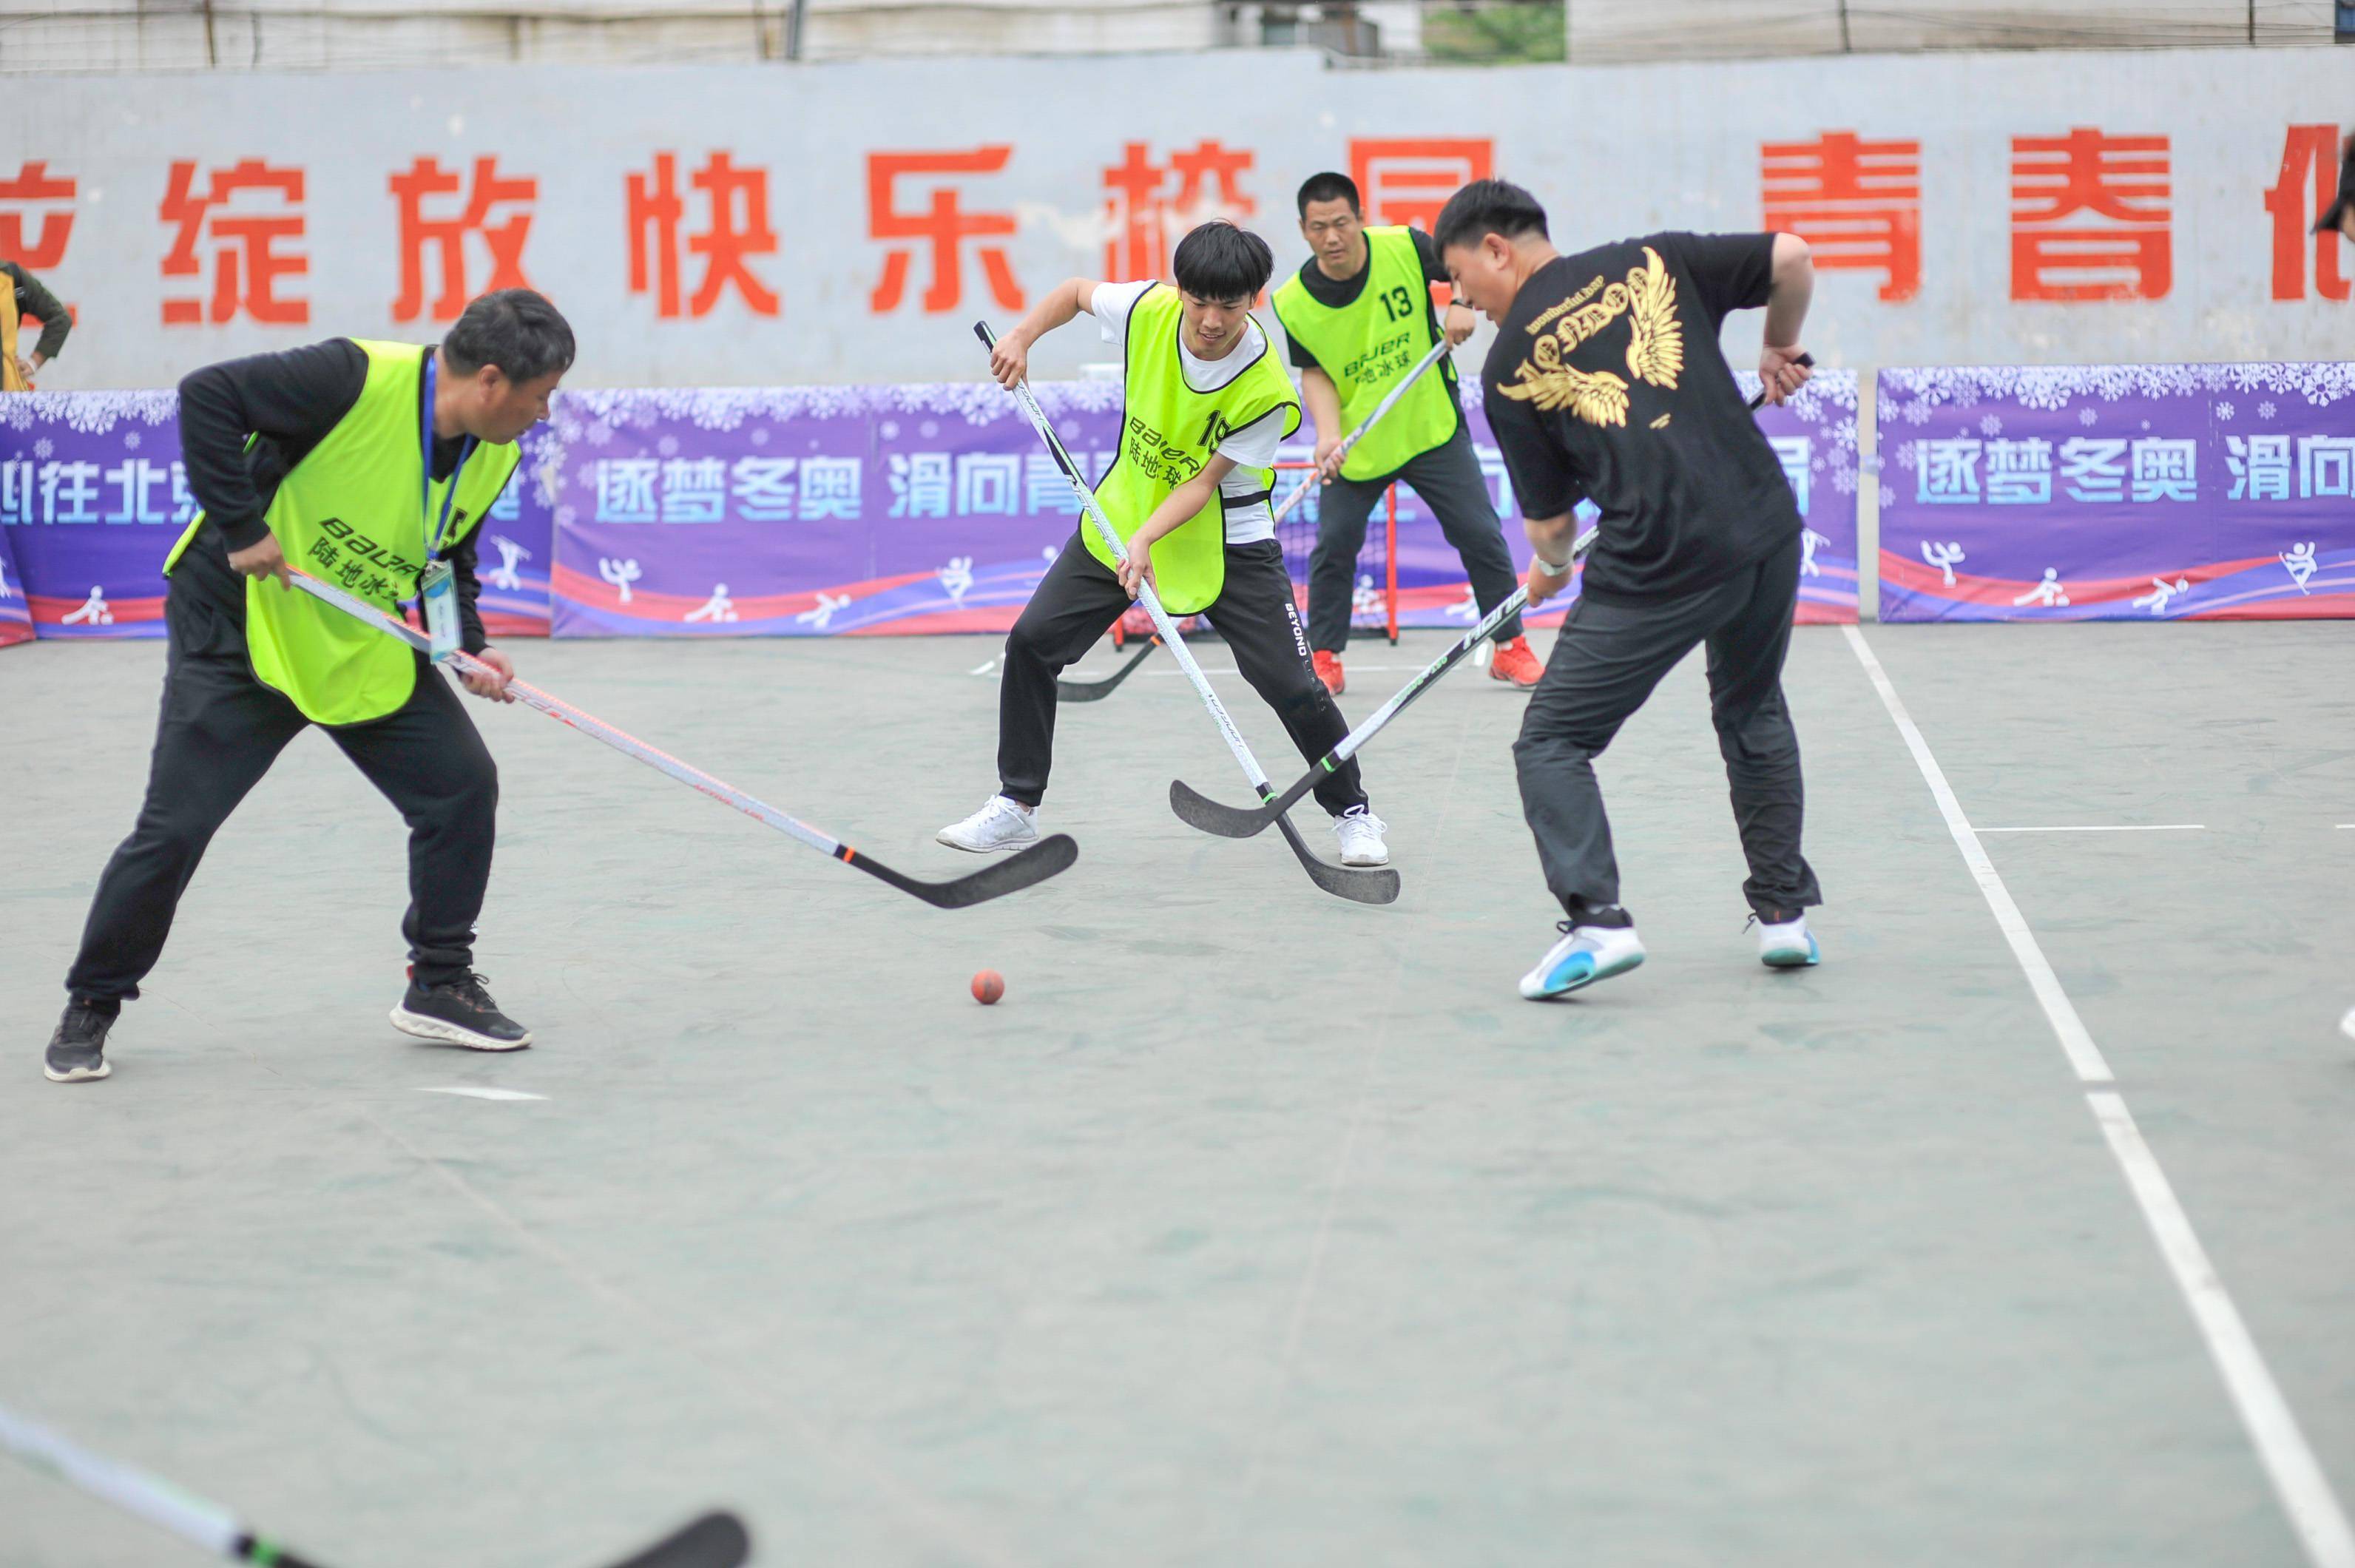 nhl在华举办陆地冰球培训逾千名中小学教师参加